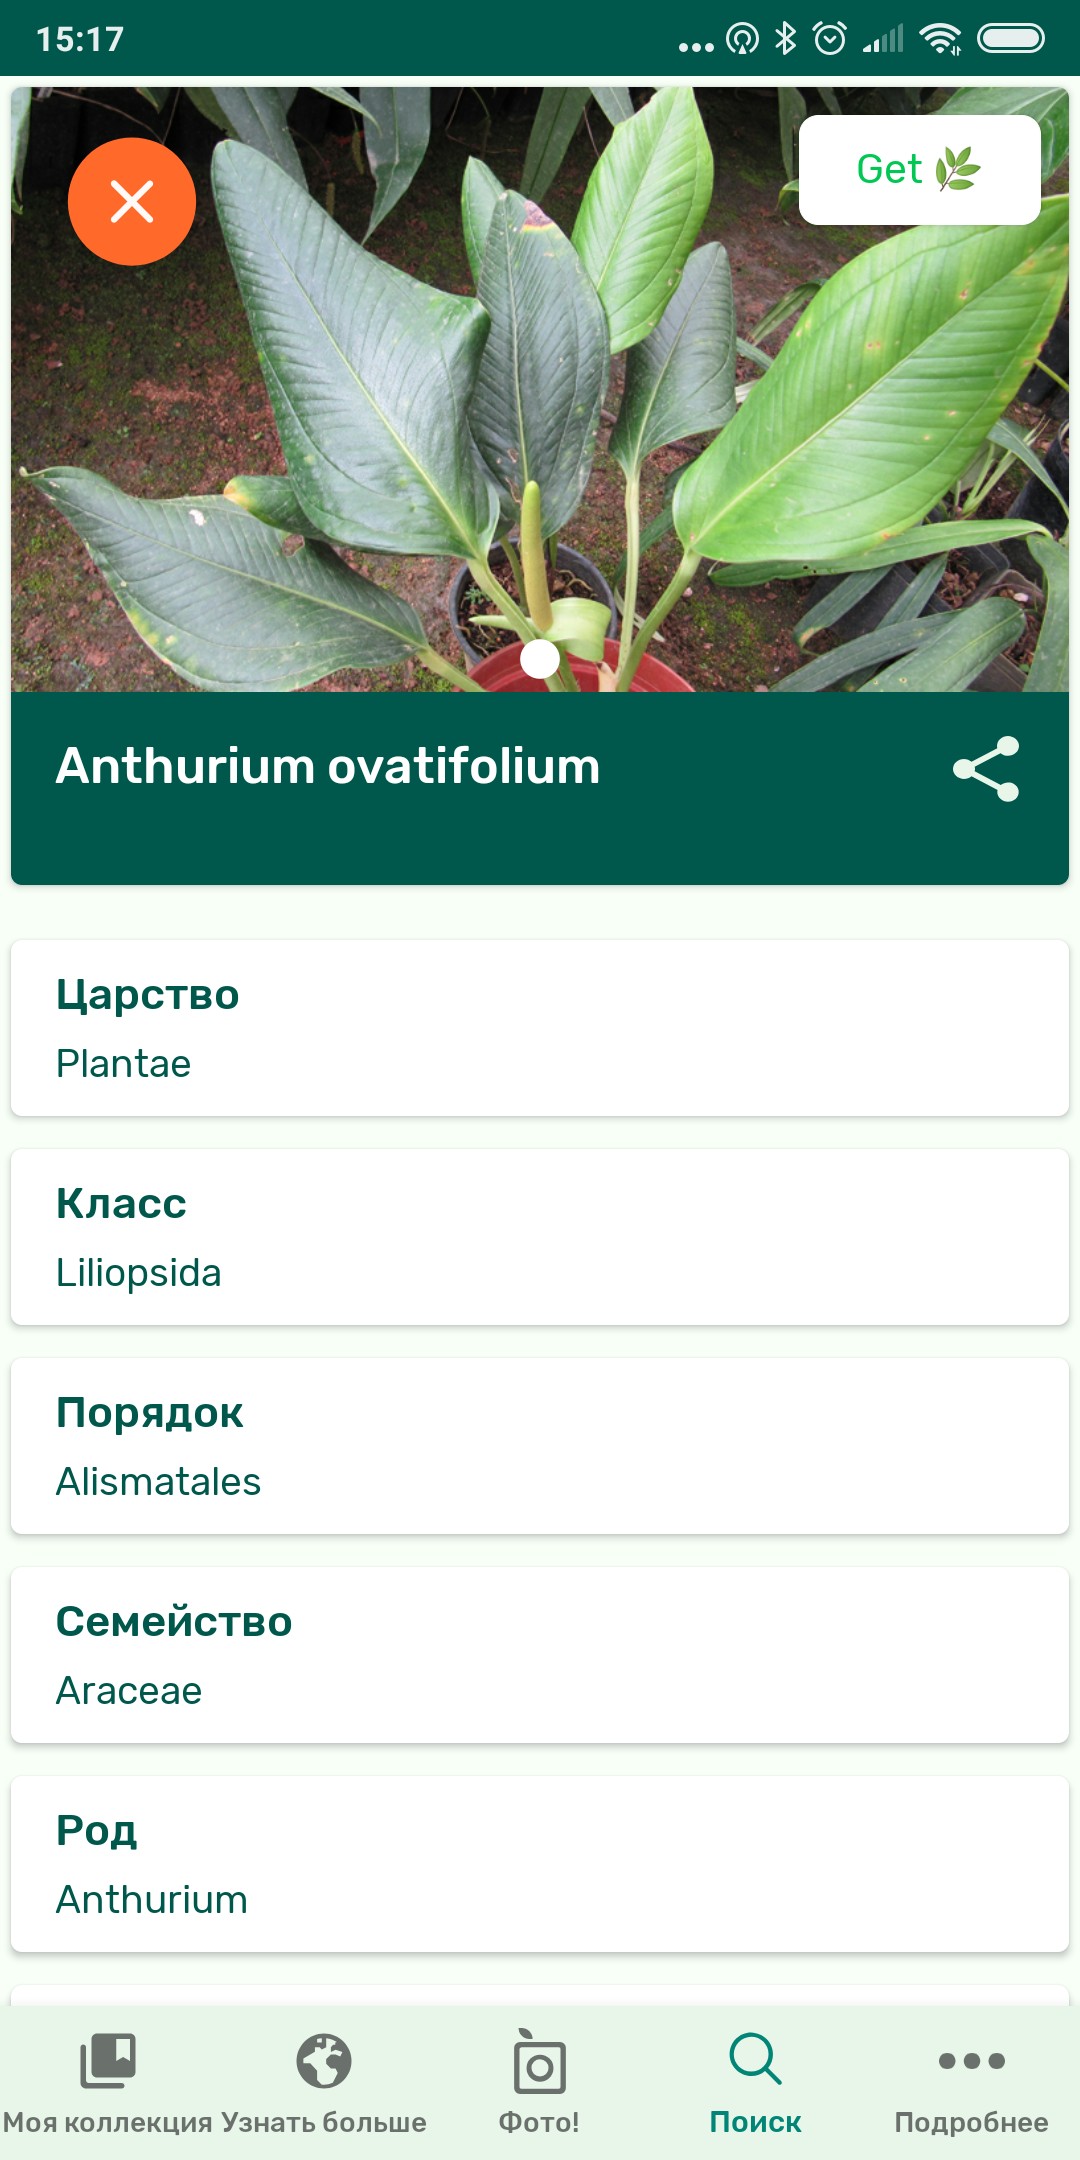 Приложение как распознать растение по фото онлайн бесплатно